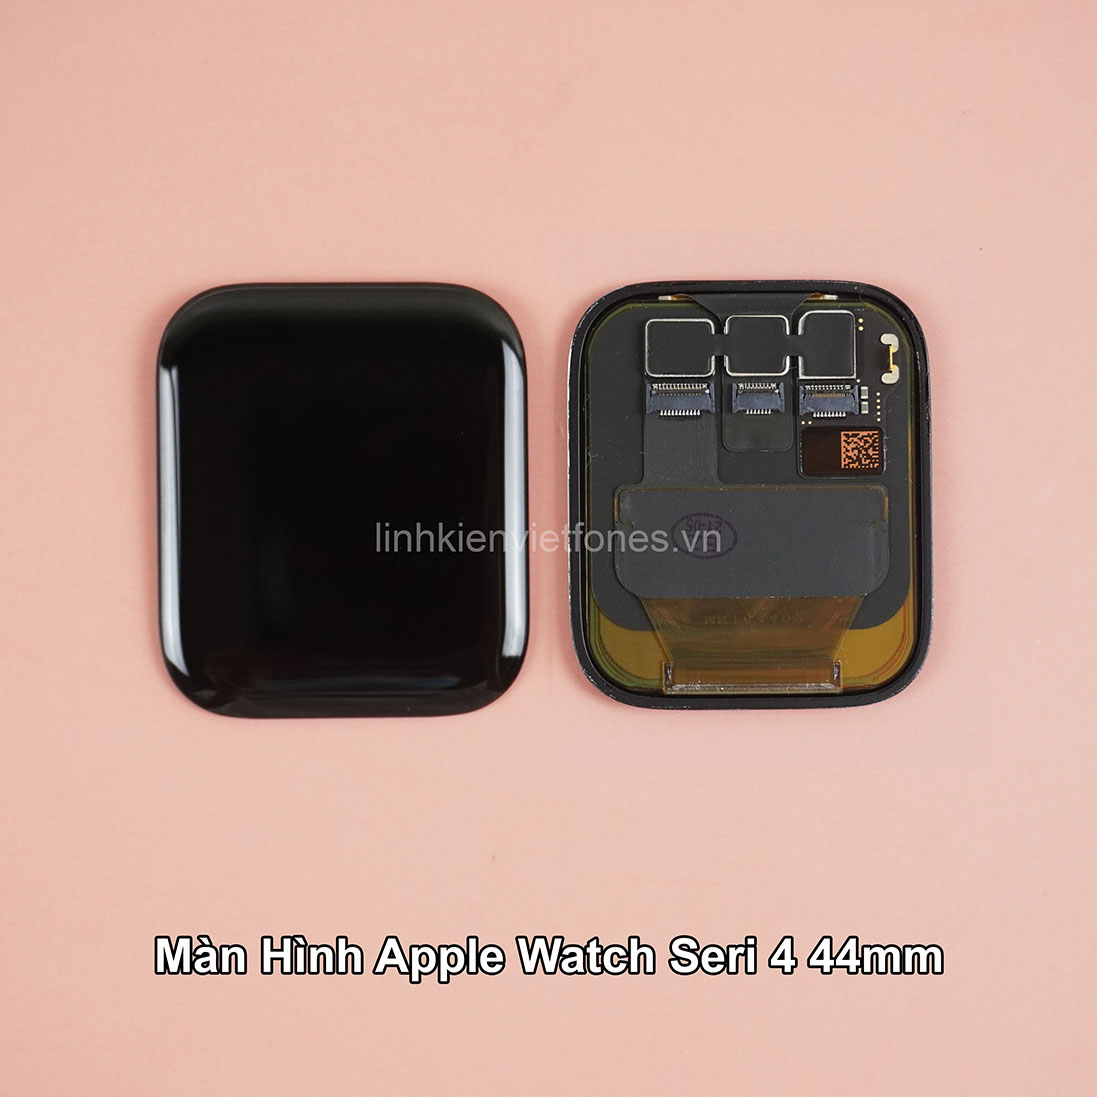 Màn hình Apple watch series 4 - 44mm New - linhkienvietfones.vn